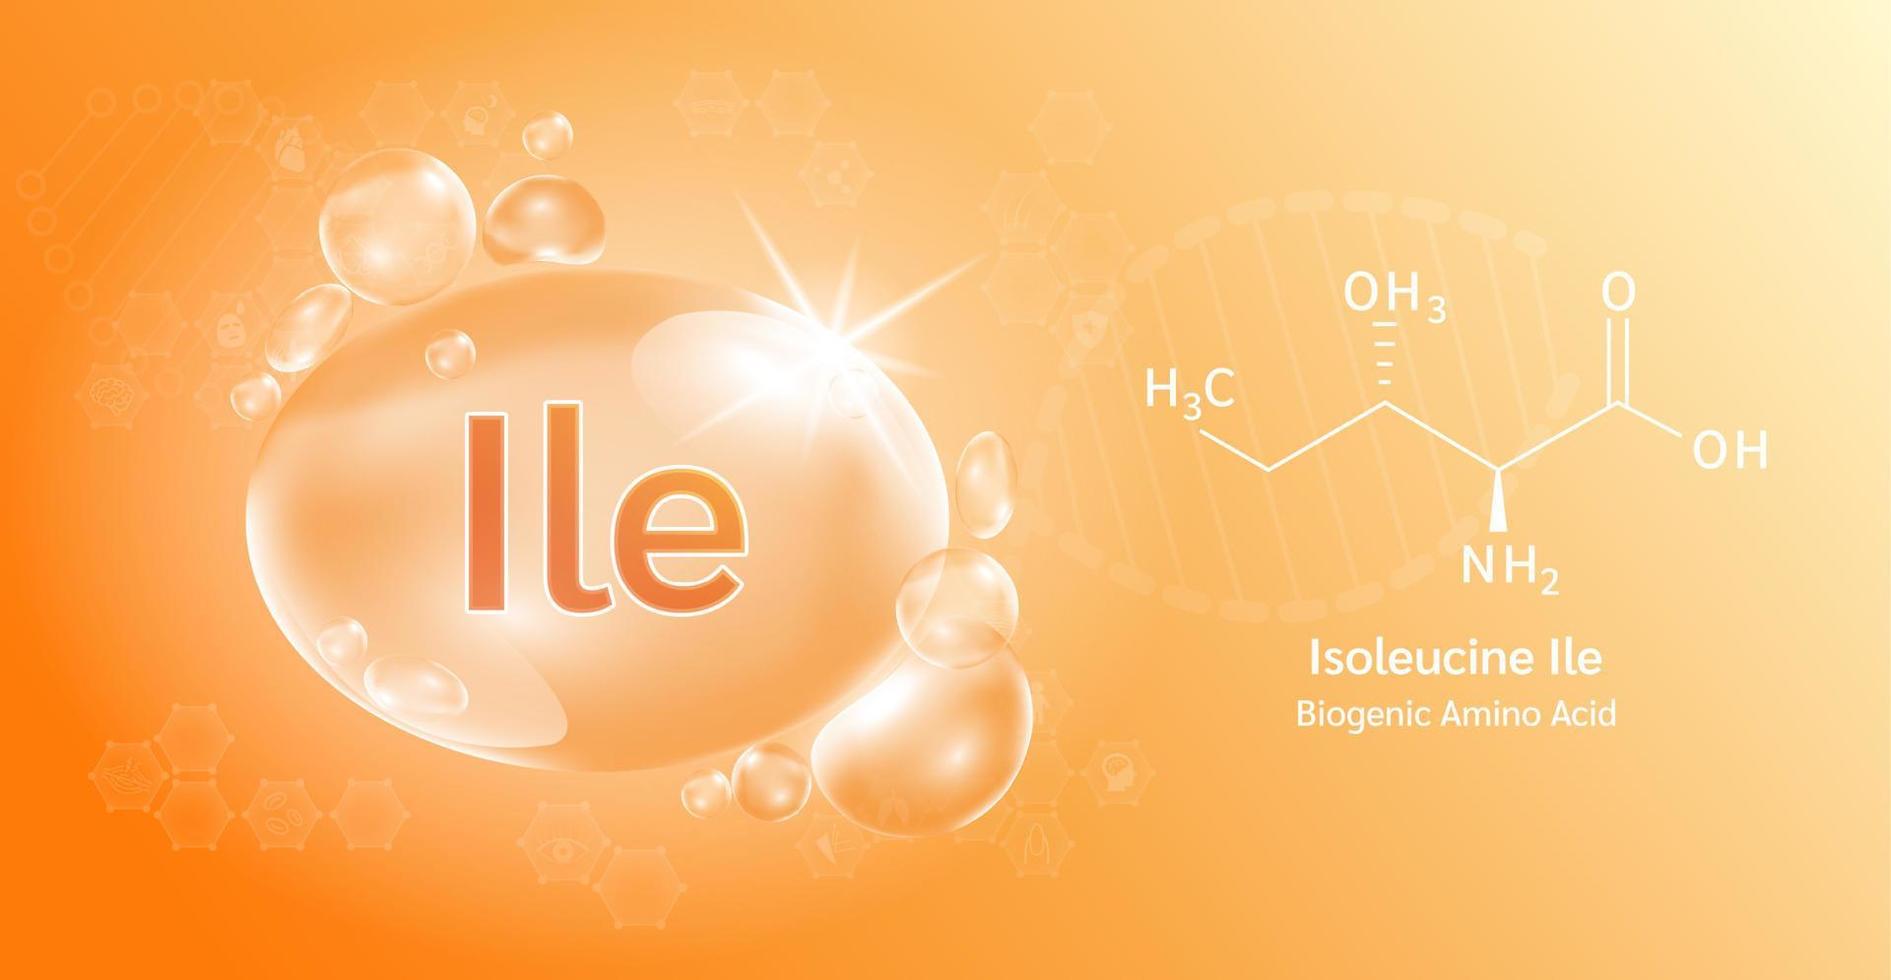 goccia d'acqua importante aminoacido isoleucina ile e formula chimica strutturale. isoleucina su sfondo arancione. concetti medici e scientifici. illustrazione vettoriale 3d.